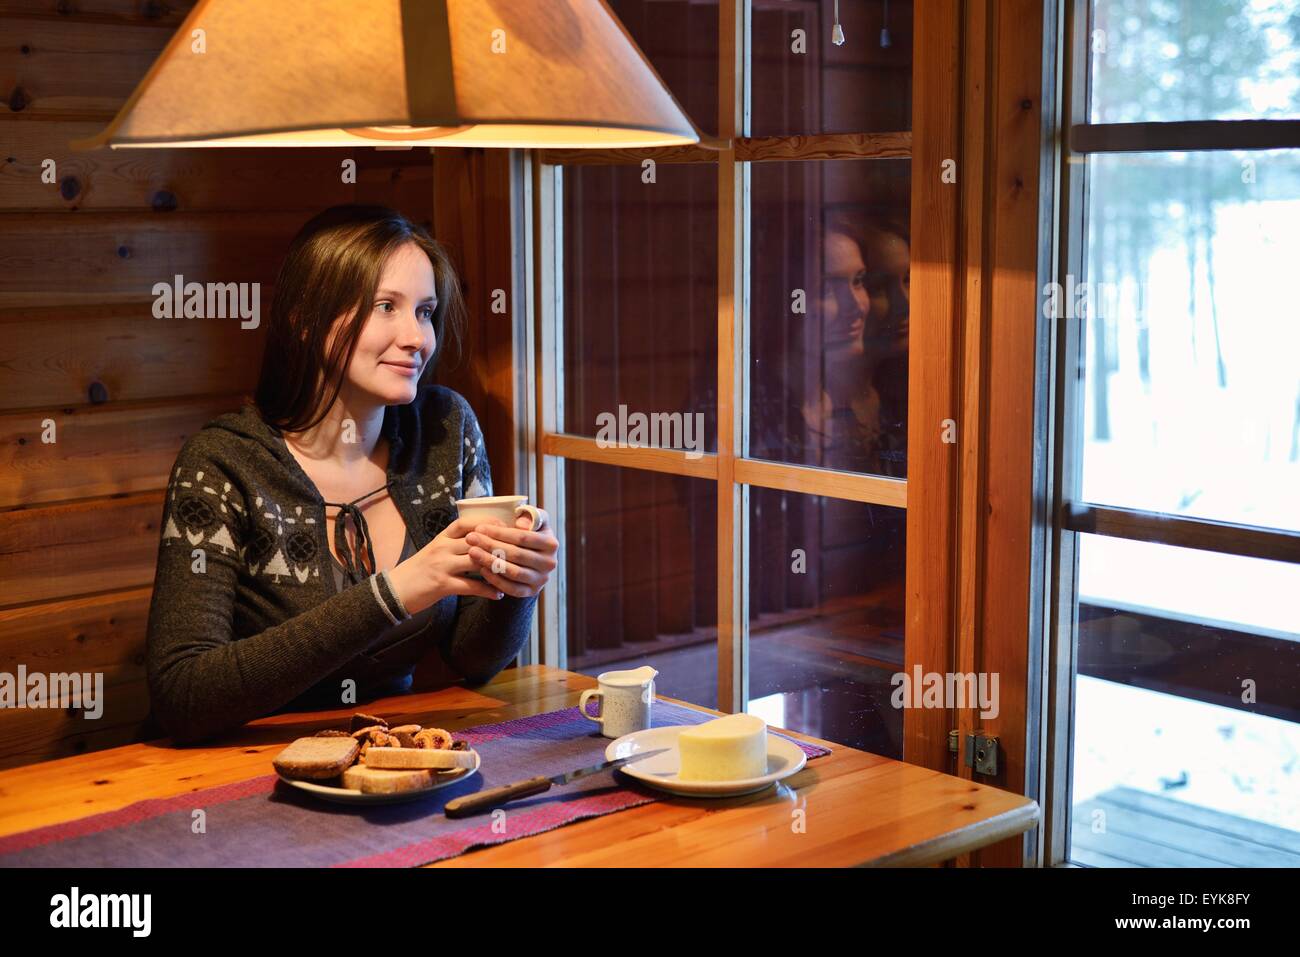 Porträt der jungen Frau Kaffee trinken und der Blick aus dem Fenster, Posio, Lappland, Finnland Stockfoto